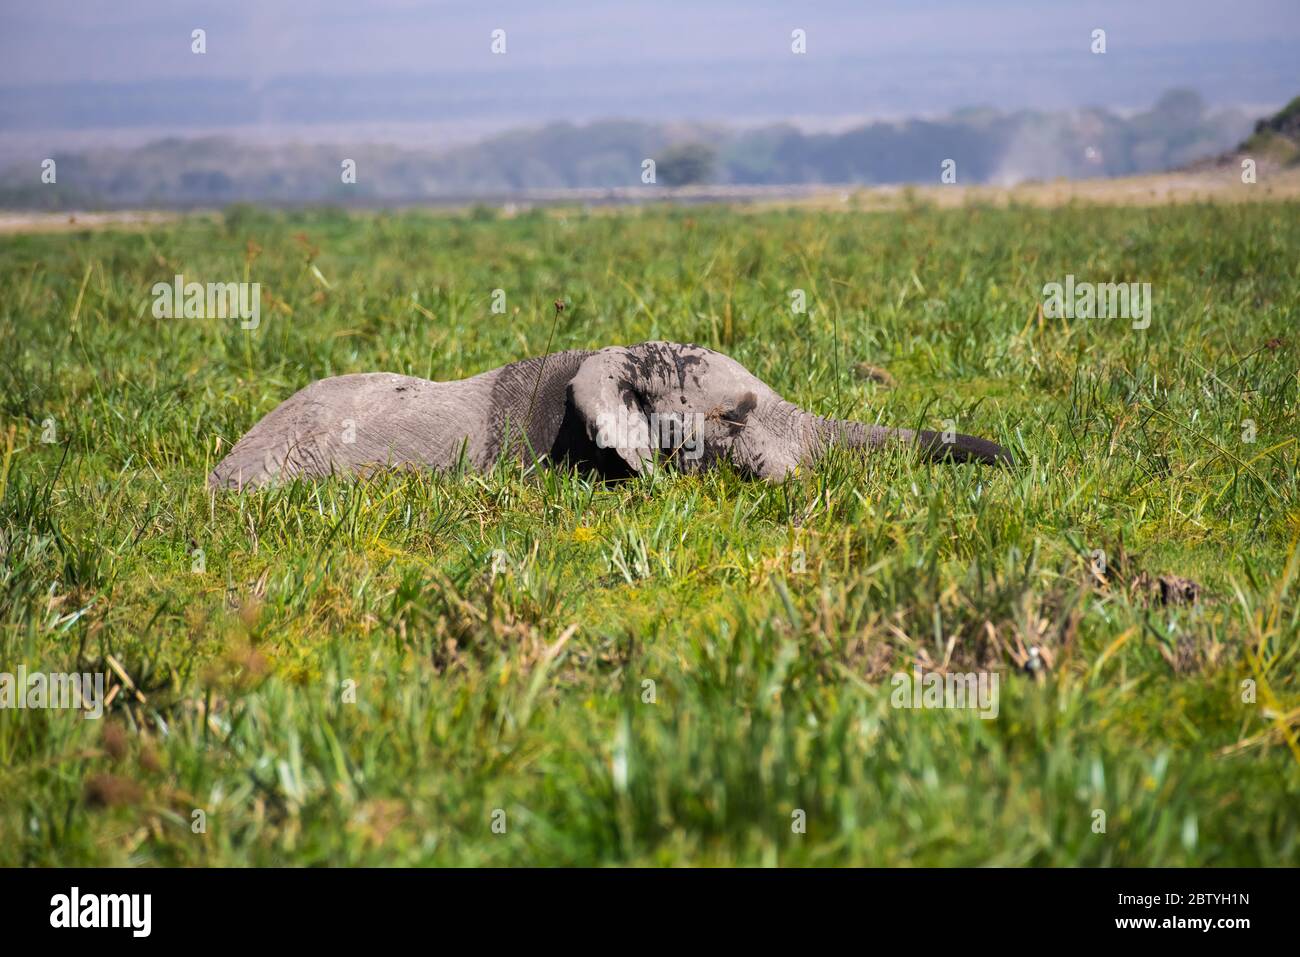 African Elephants or  Tuskers from Amboseli  Kenya Stock Photo